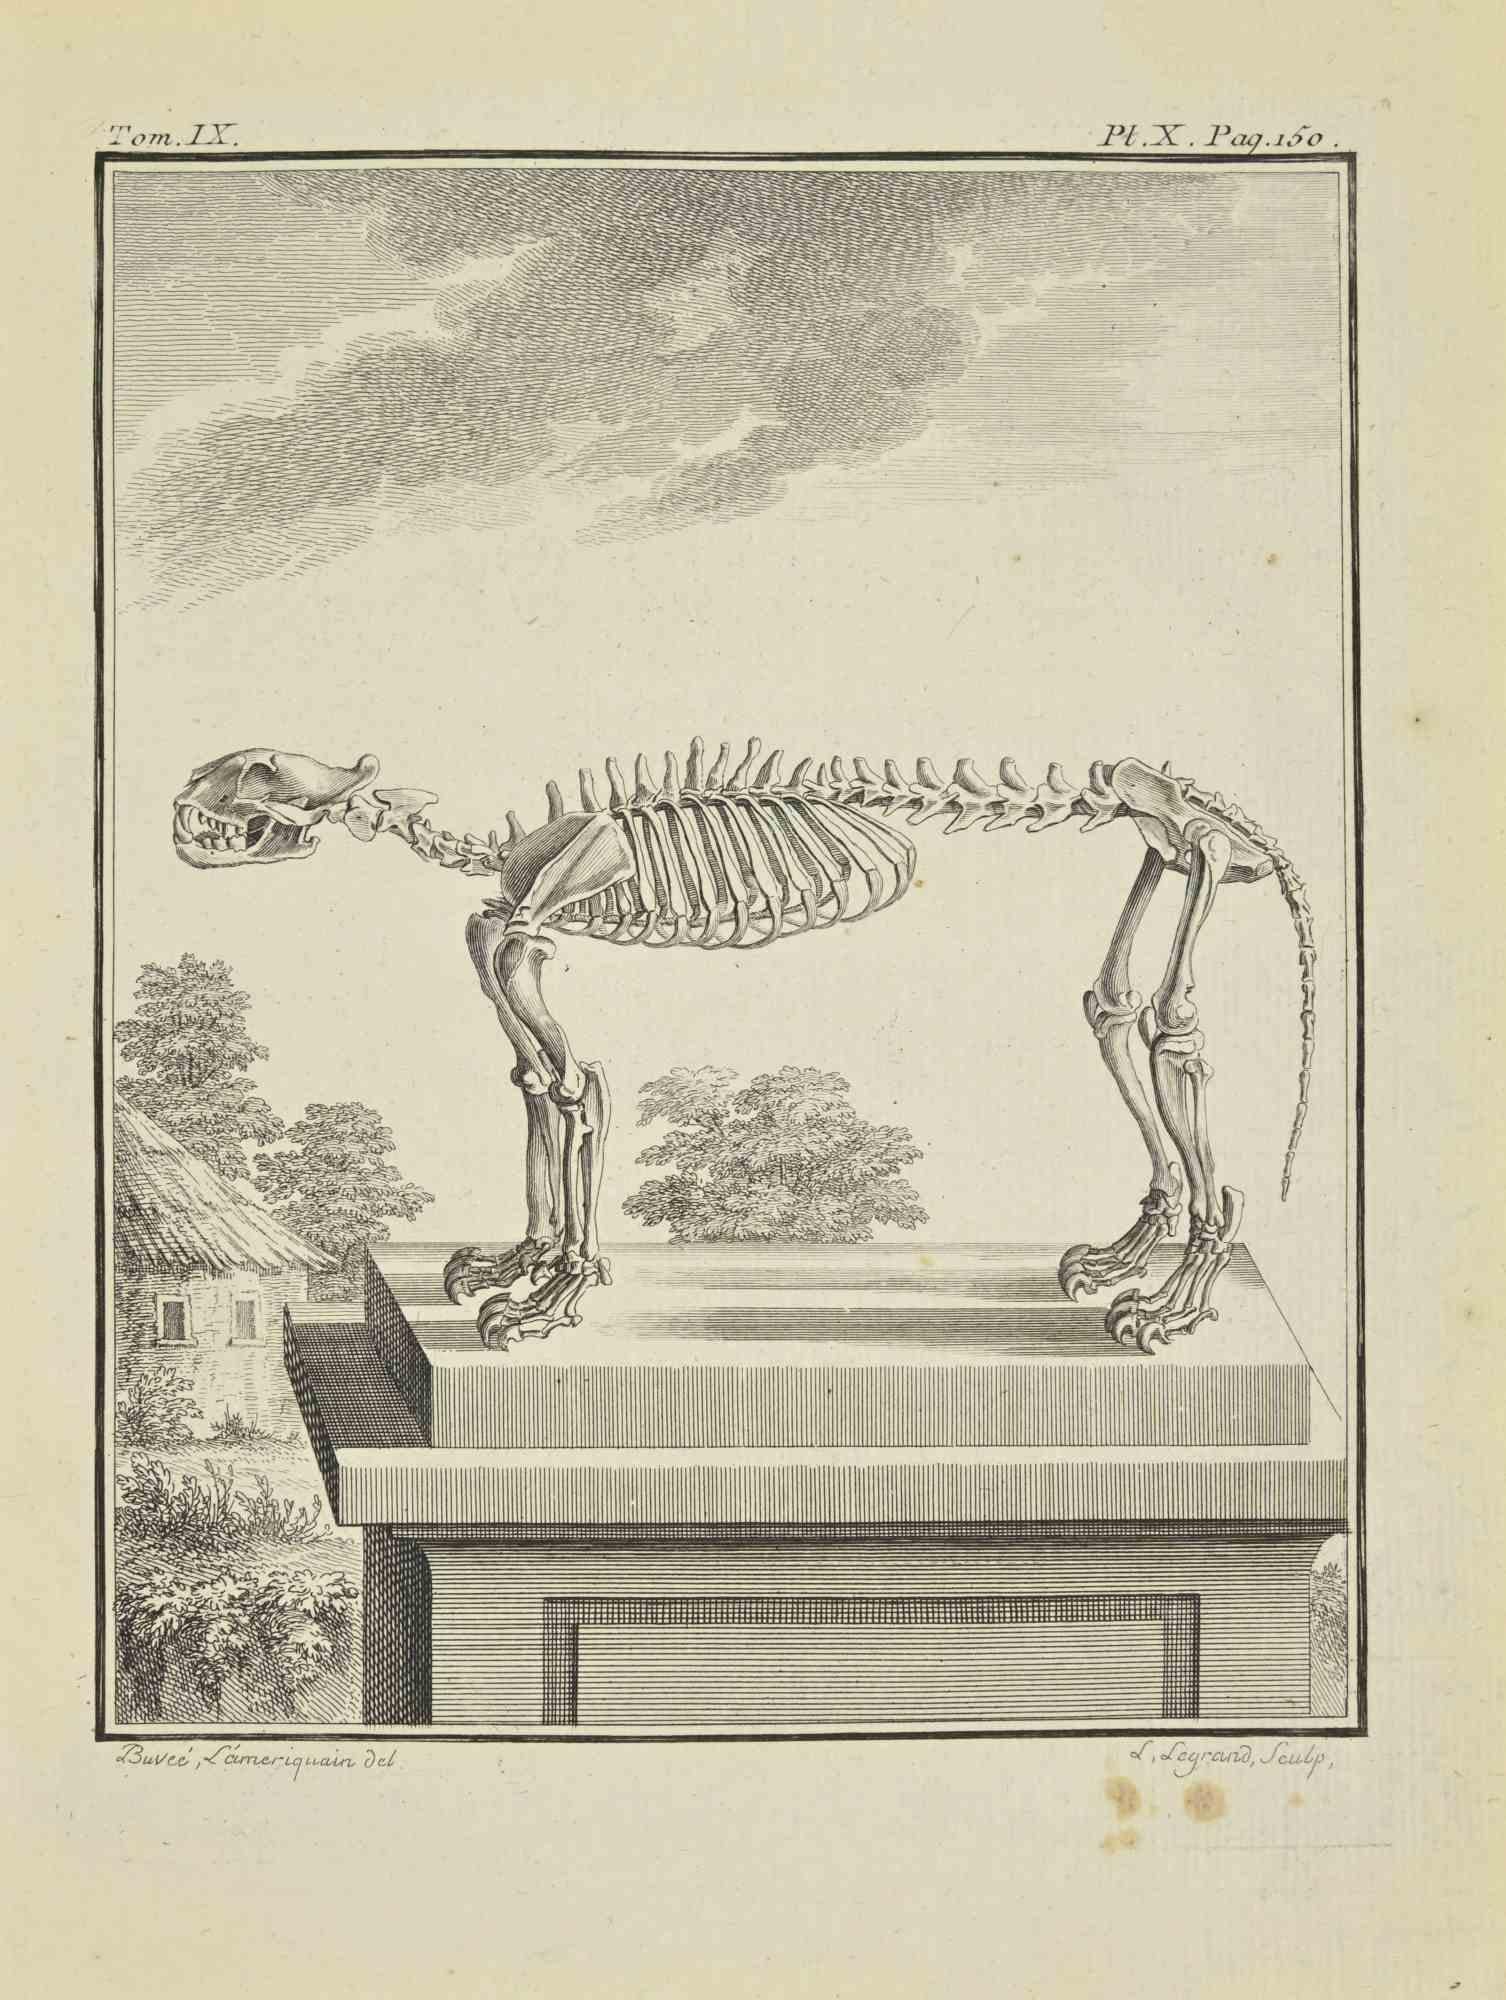 Le Squelette est une eau-forte réalisée en 1771 par Louis Legrand (1723-1807).

Titre et signature sur la plaque.

L'oeuvre appartient à la suite "Histoire naturelle, générale et particulière avec la description du Cabinet du Roi". Paris :